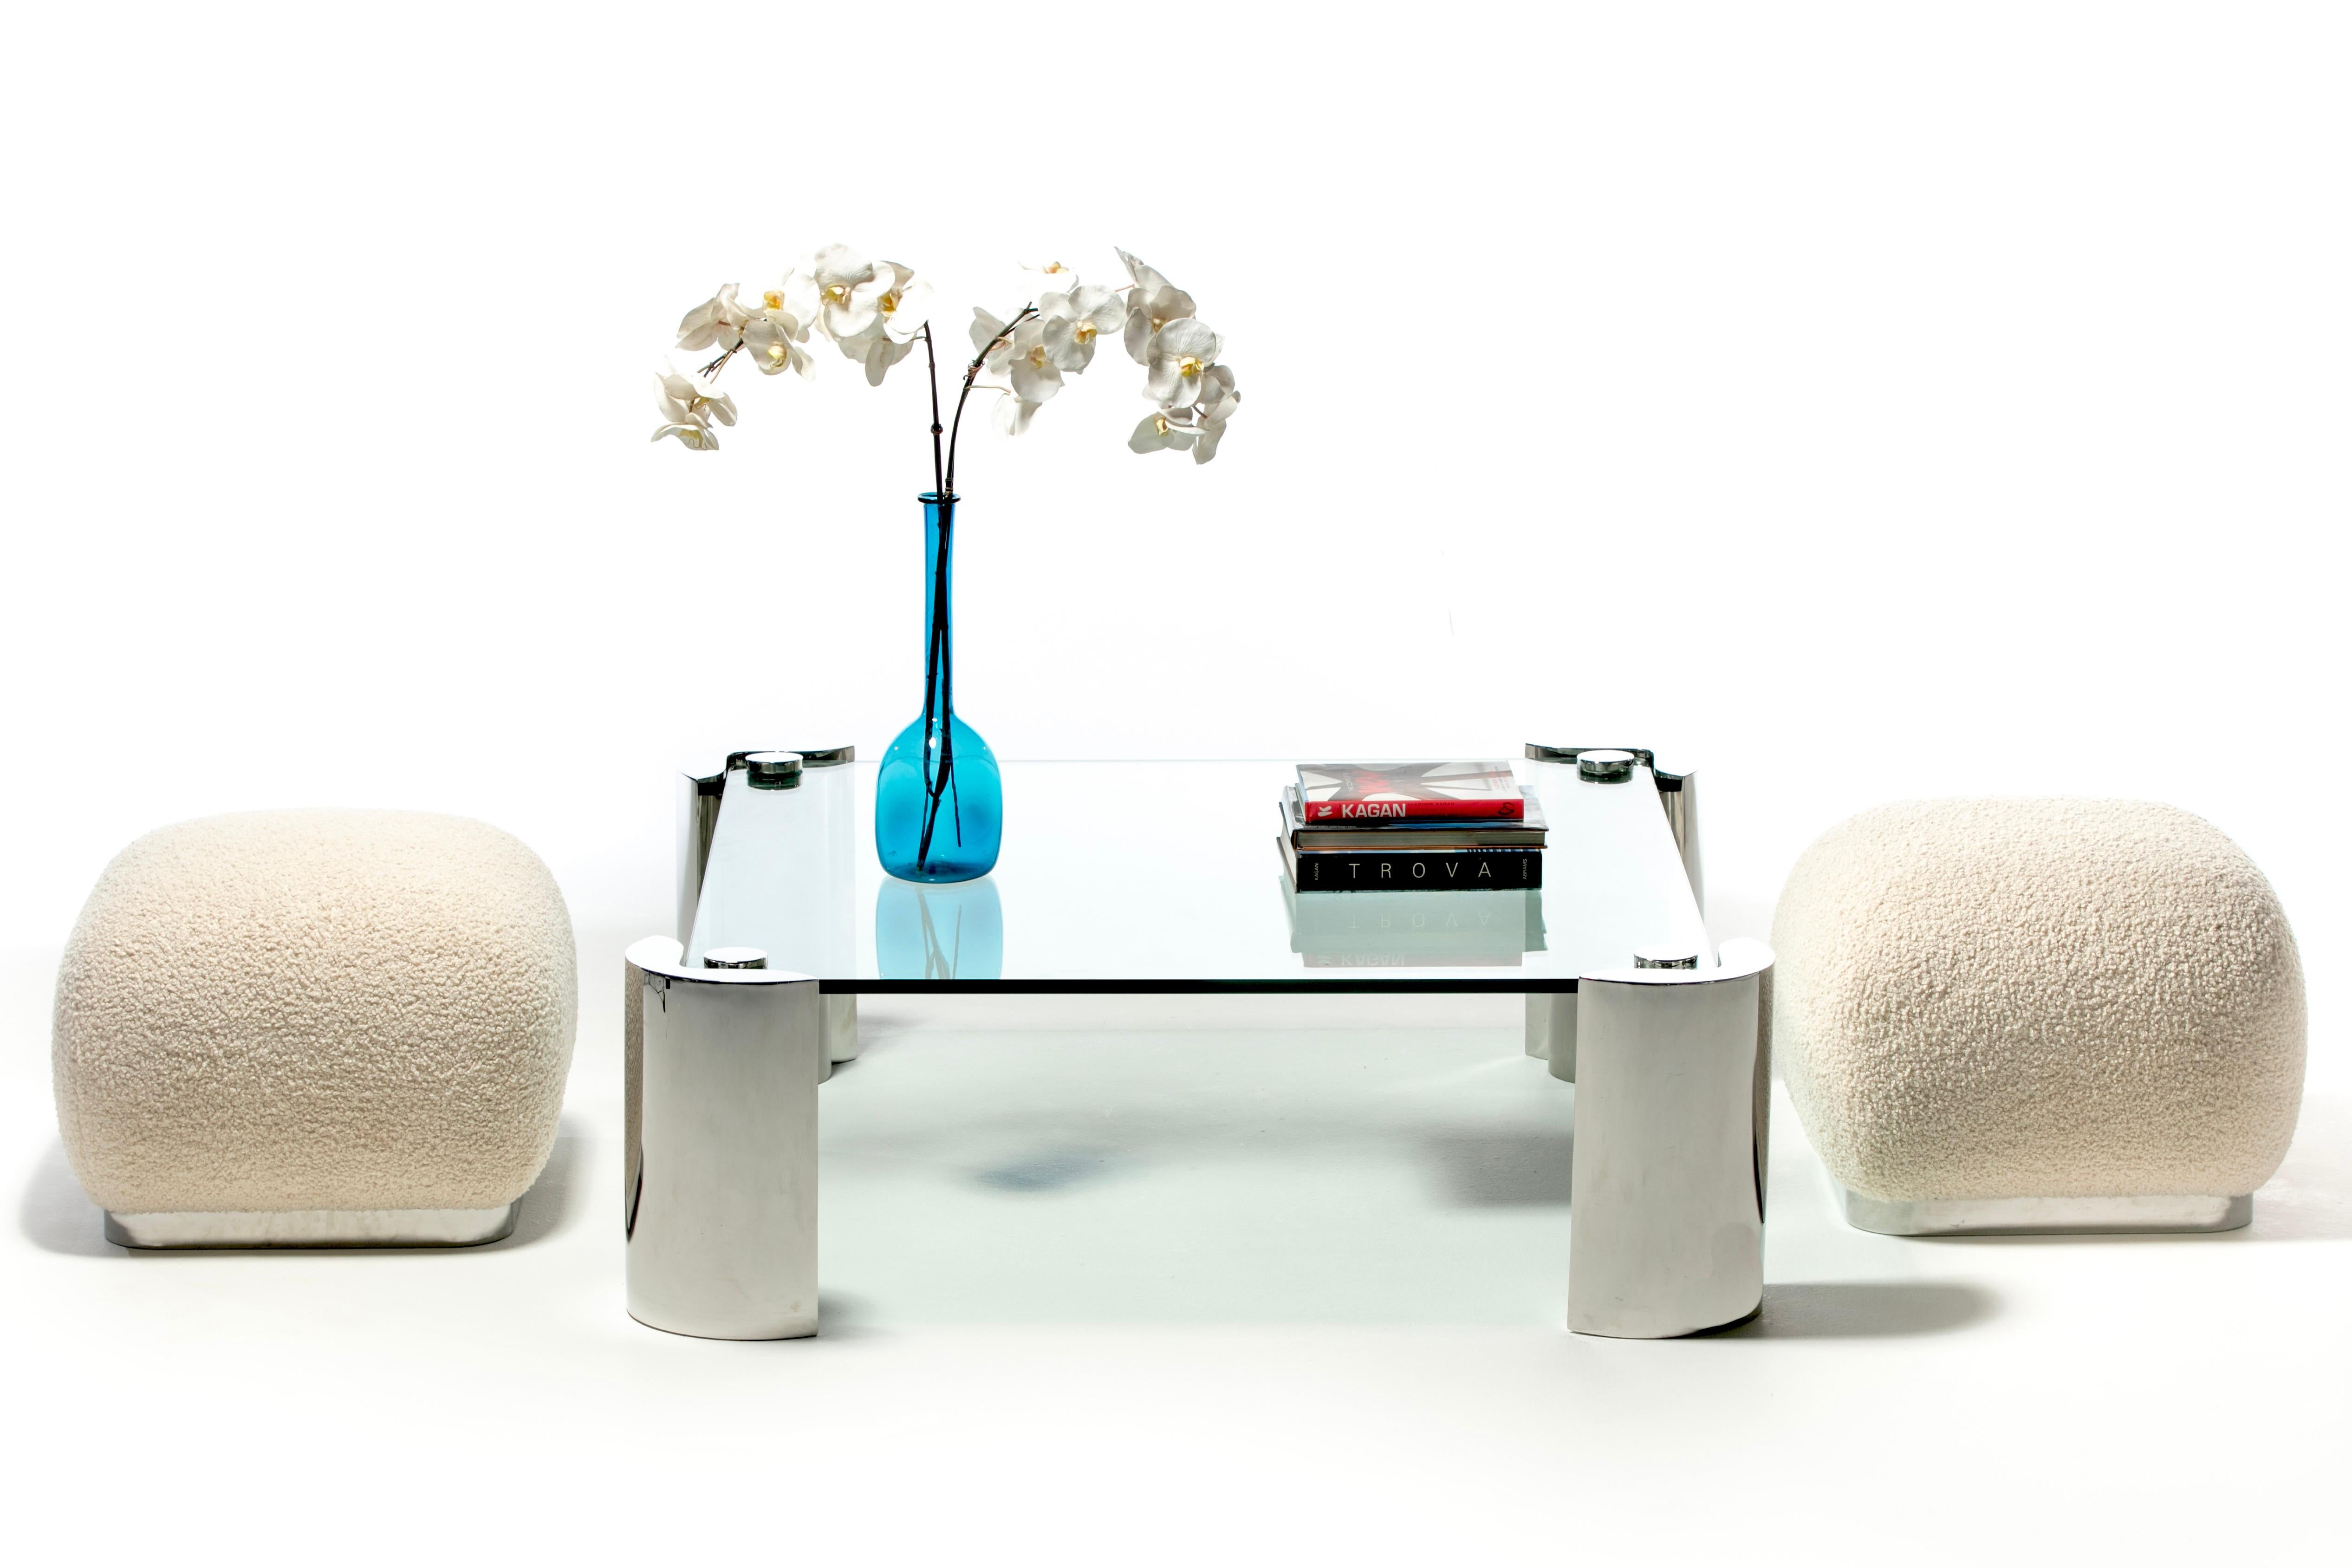 La table basse moderne Karl Springer Monumental, avec ses lourds pieds en acier inoxydable et son épais plateau en verre trempé, est du genre à ancrer n'importe quelle pièce - c'est ici que nous nous réunissons. Chic. Sexy. Intemporel. Karl Springer